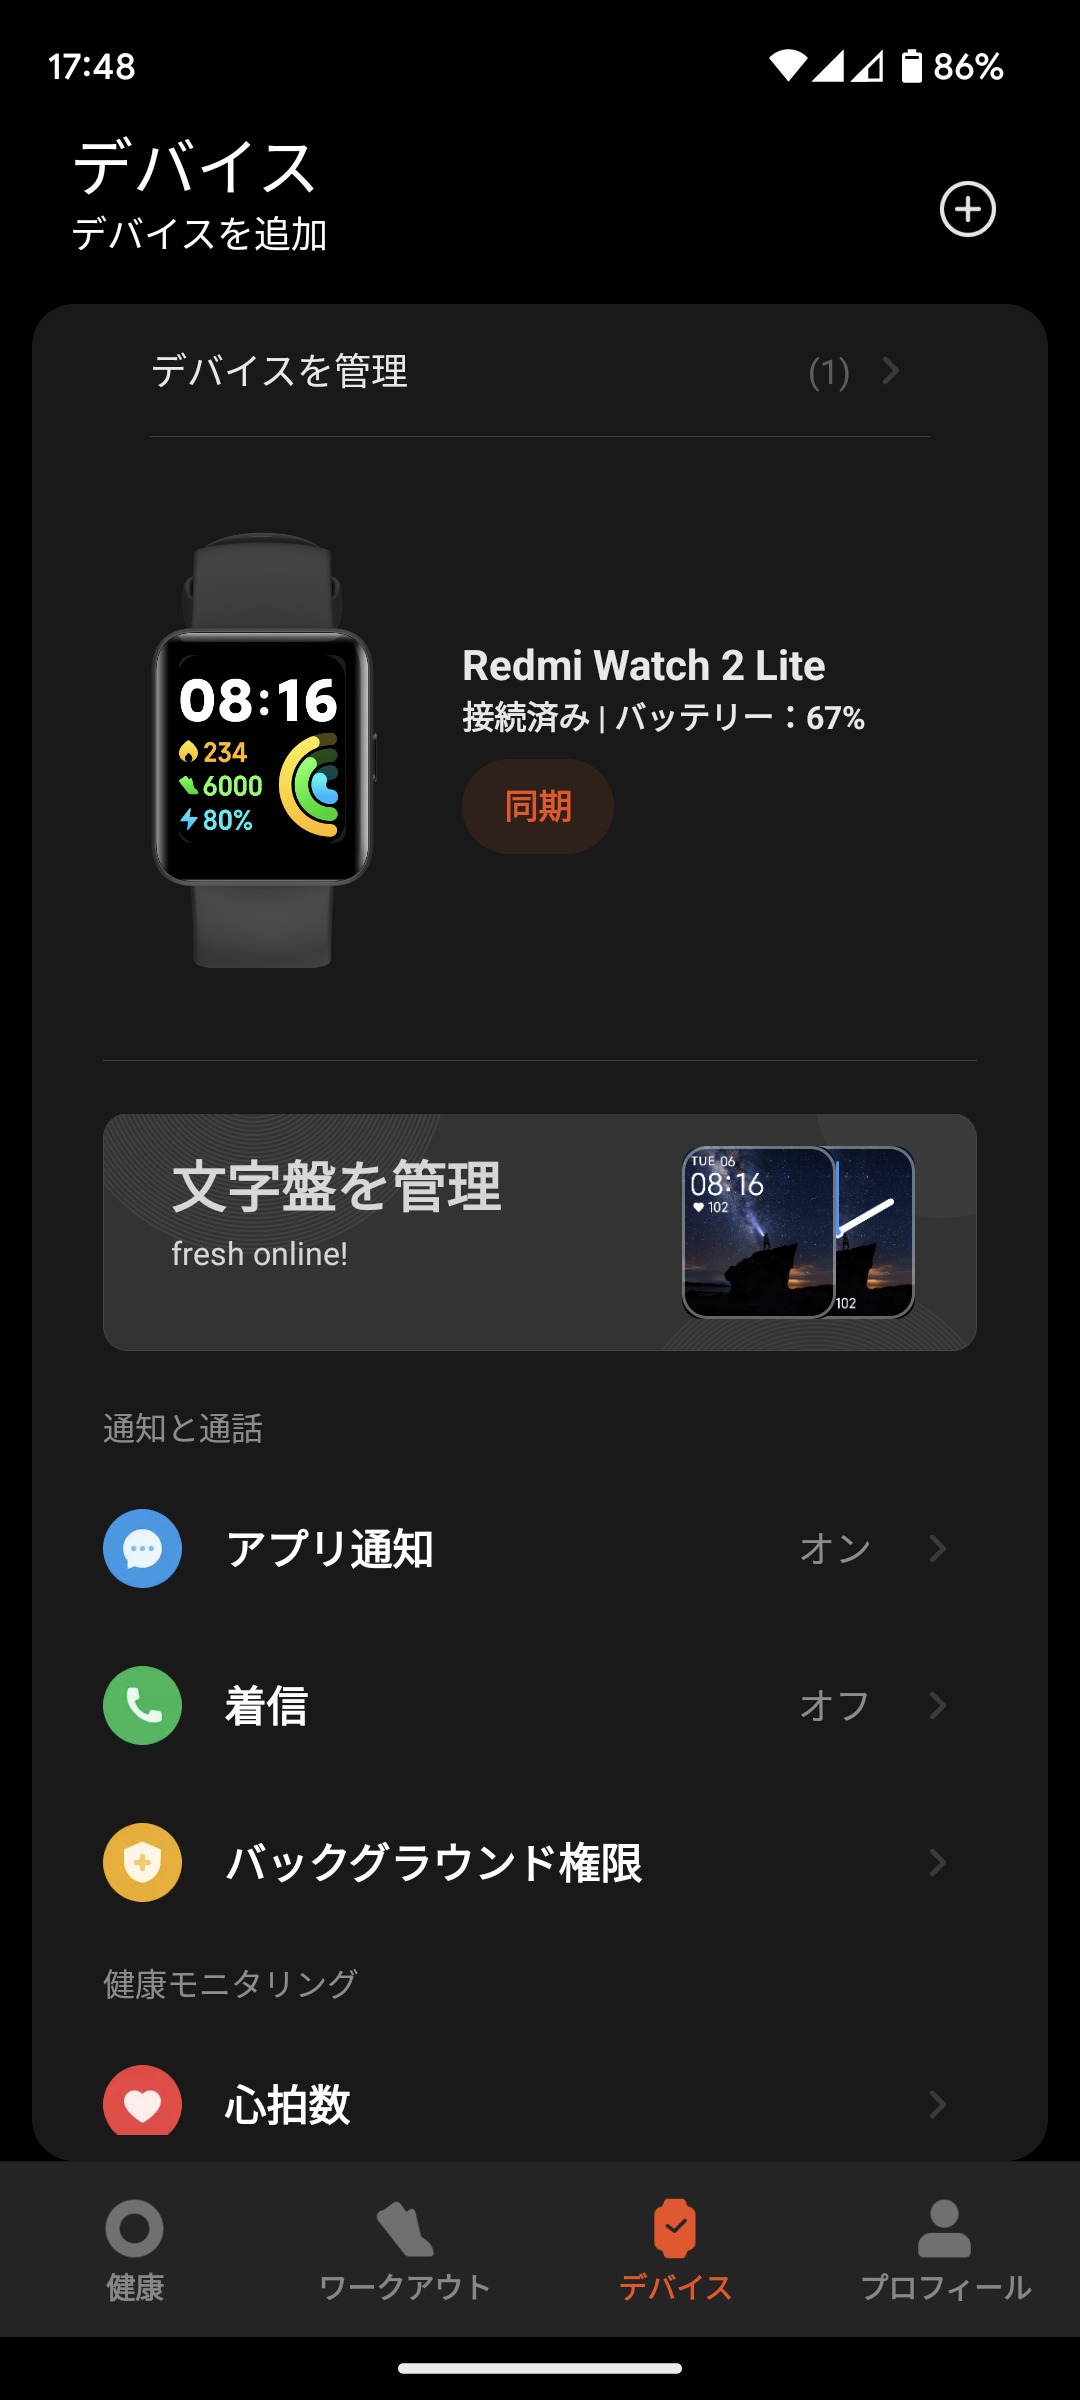 Redmi Watch 2 LiteはMi Fitnessアプリで管理